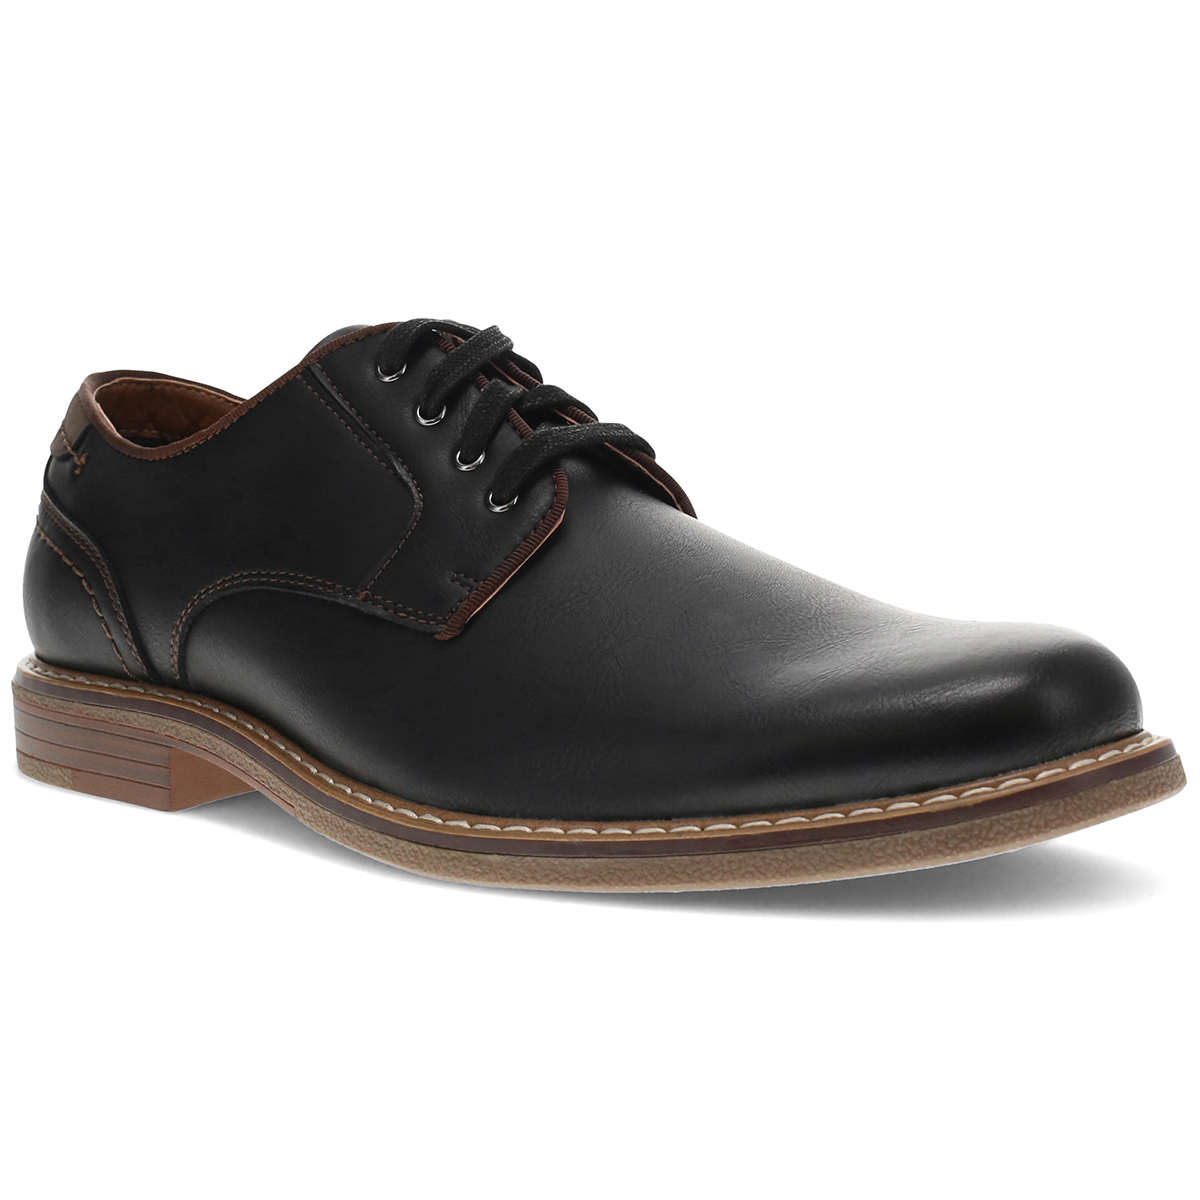 Dockers Men's Bronson Shoes - Size 13